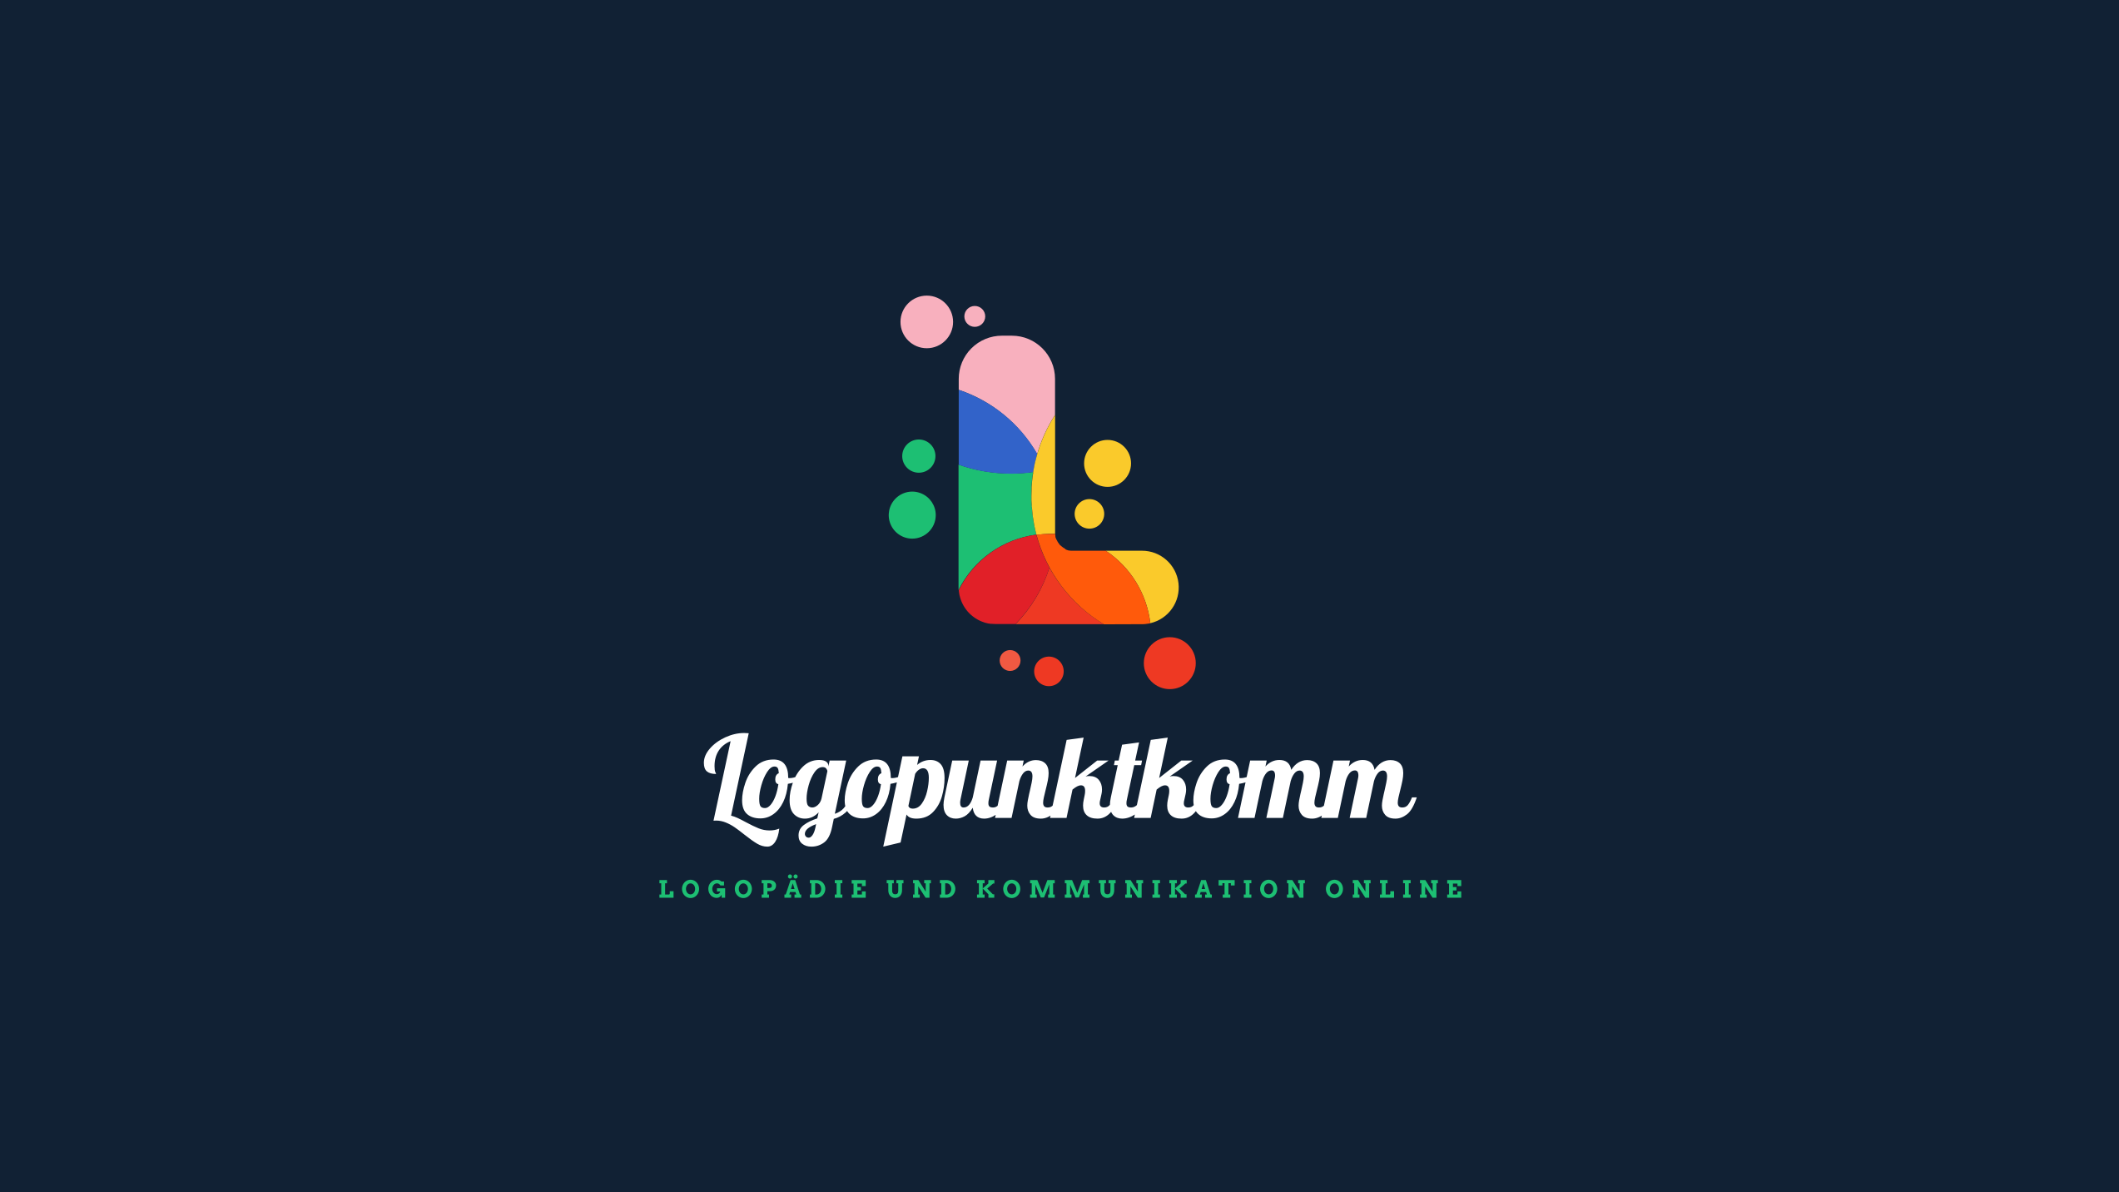 Bild 2 Logopunktkomm - Logopädie digital, innovativ und unkompliziert in Stuttgart